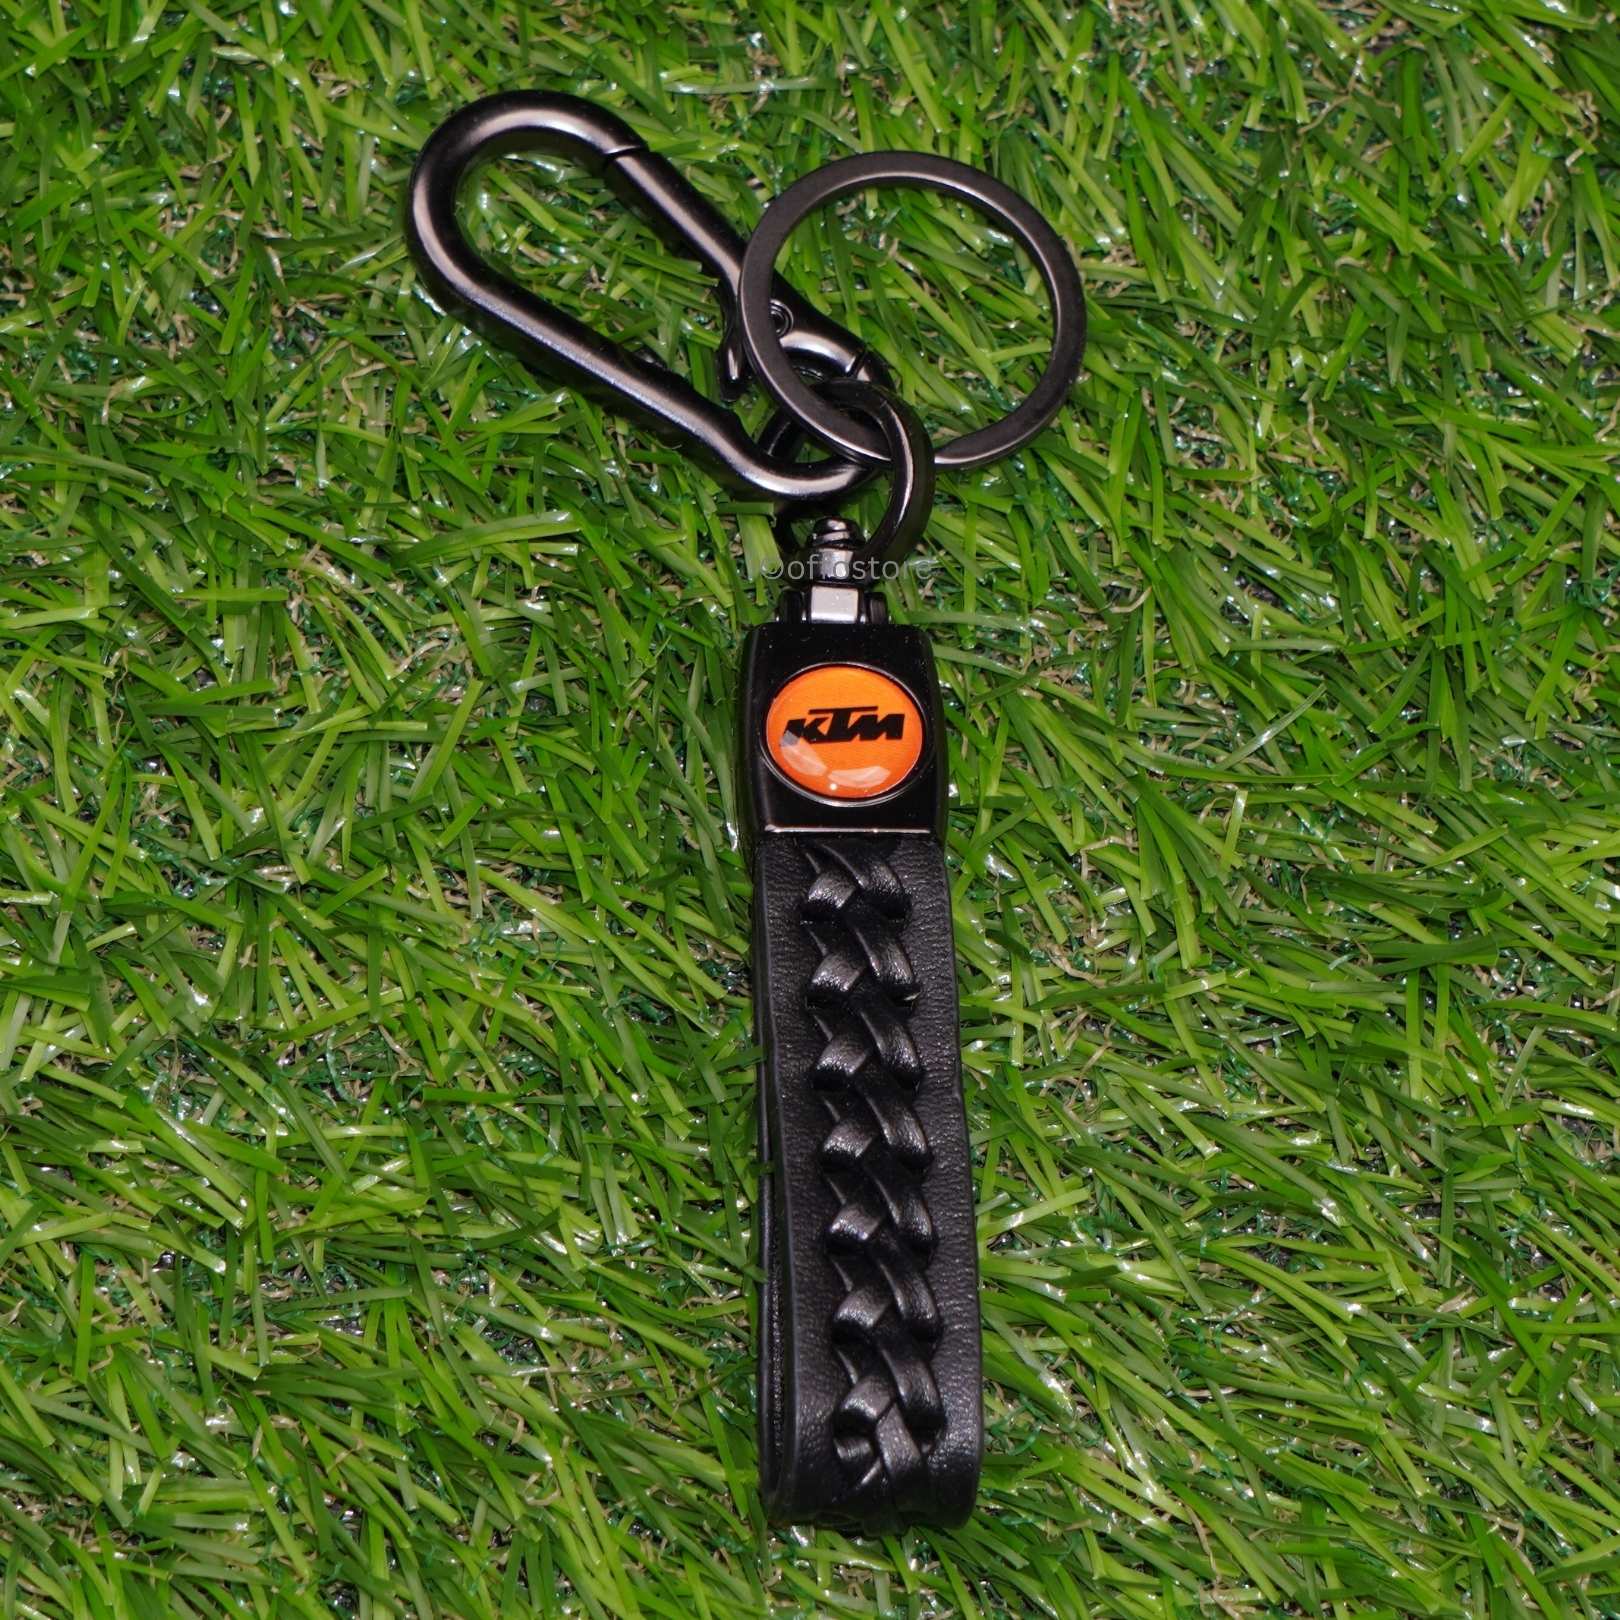 KTM Leather Keychain